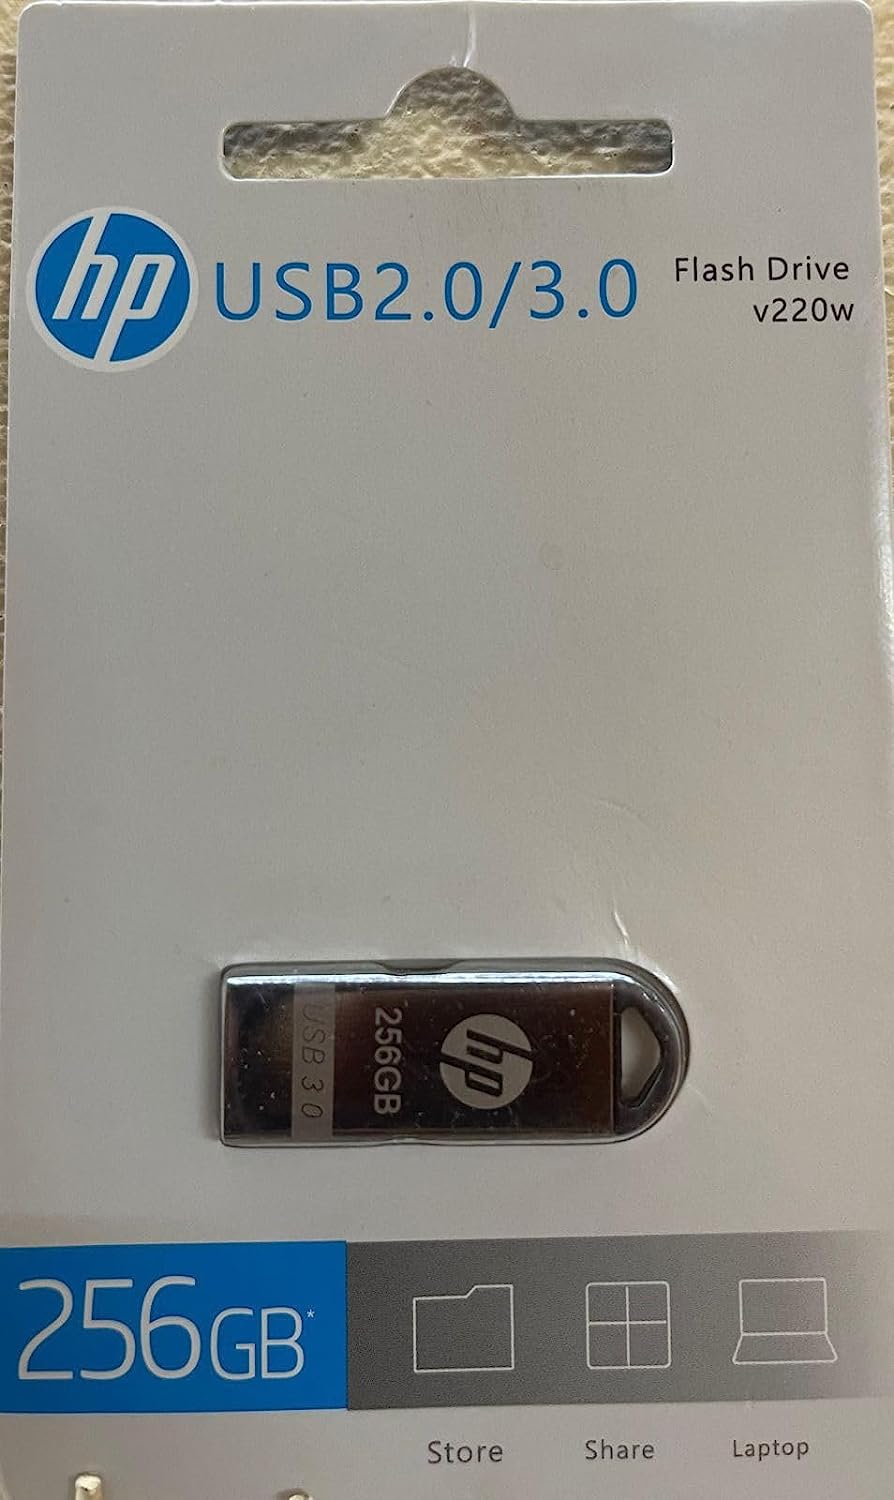 HP v220w 128 GB Pen Drive - HP 